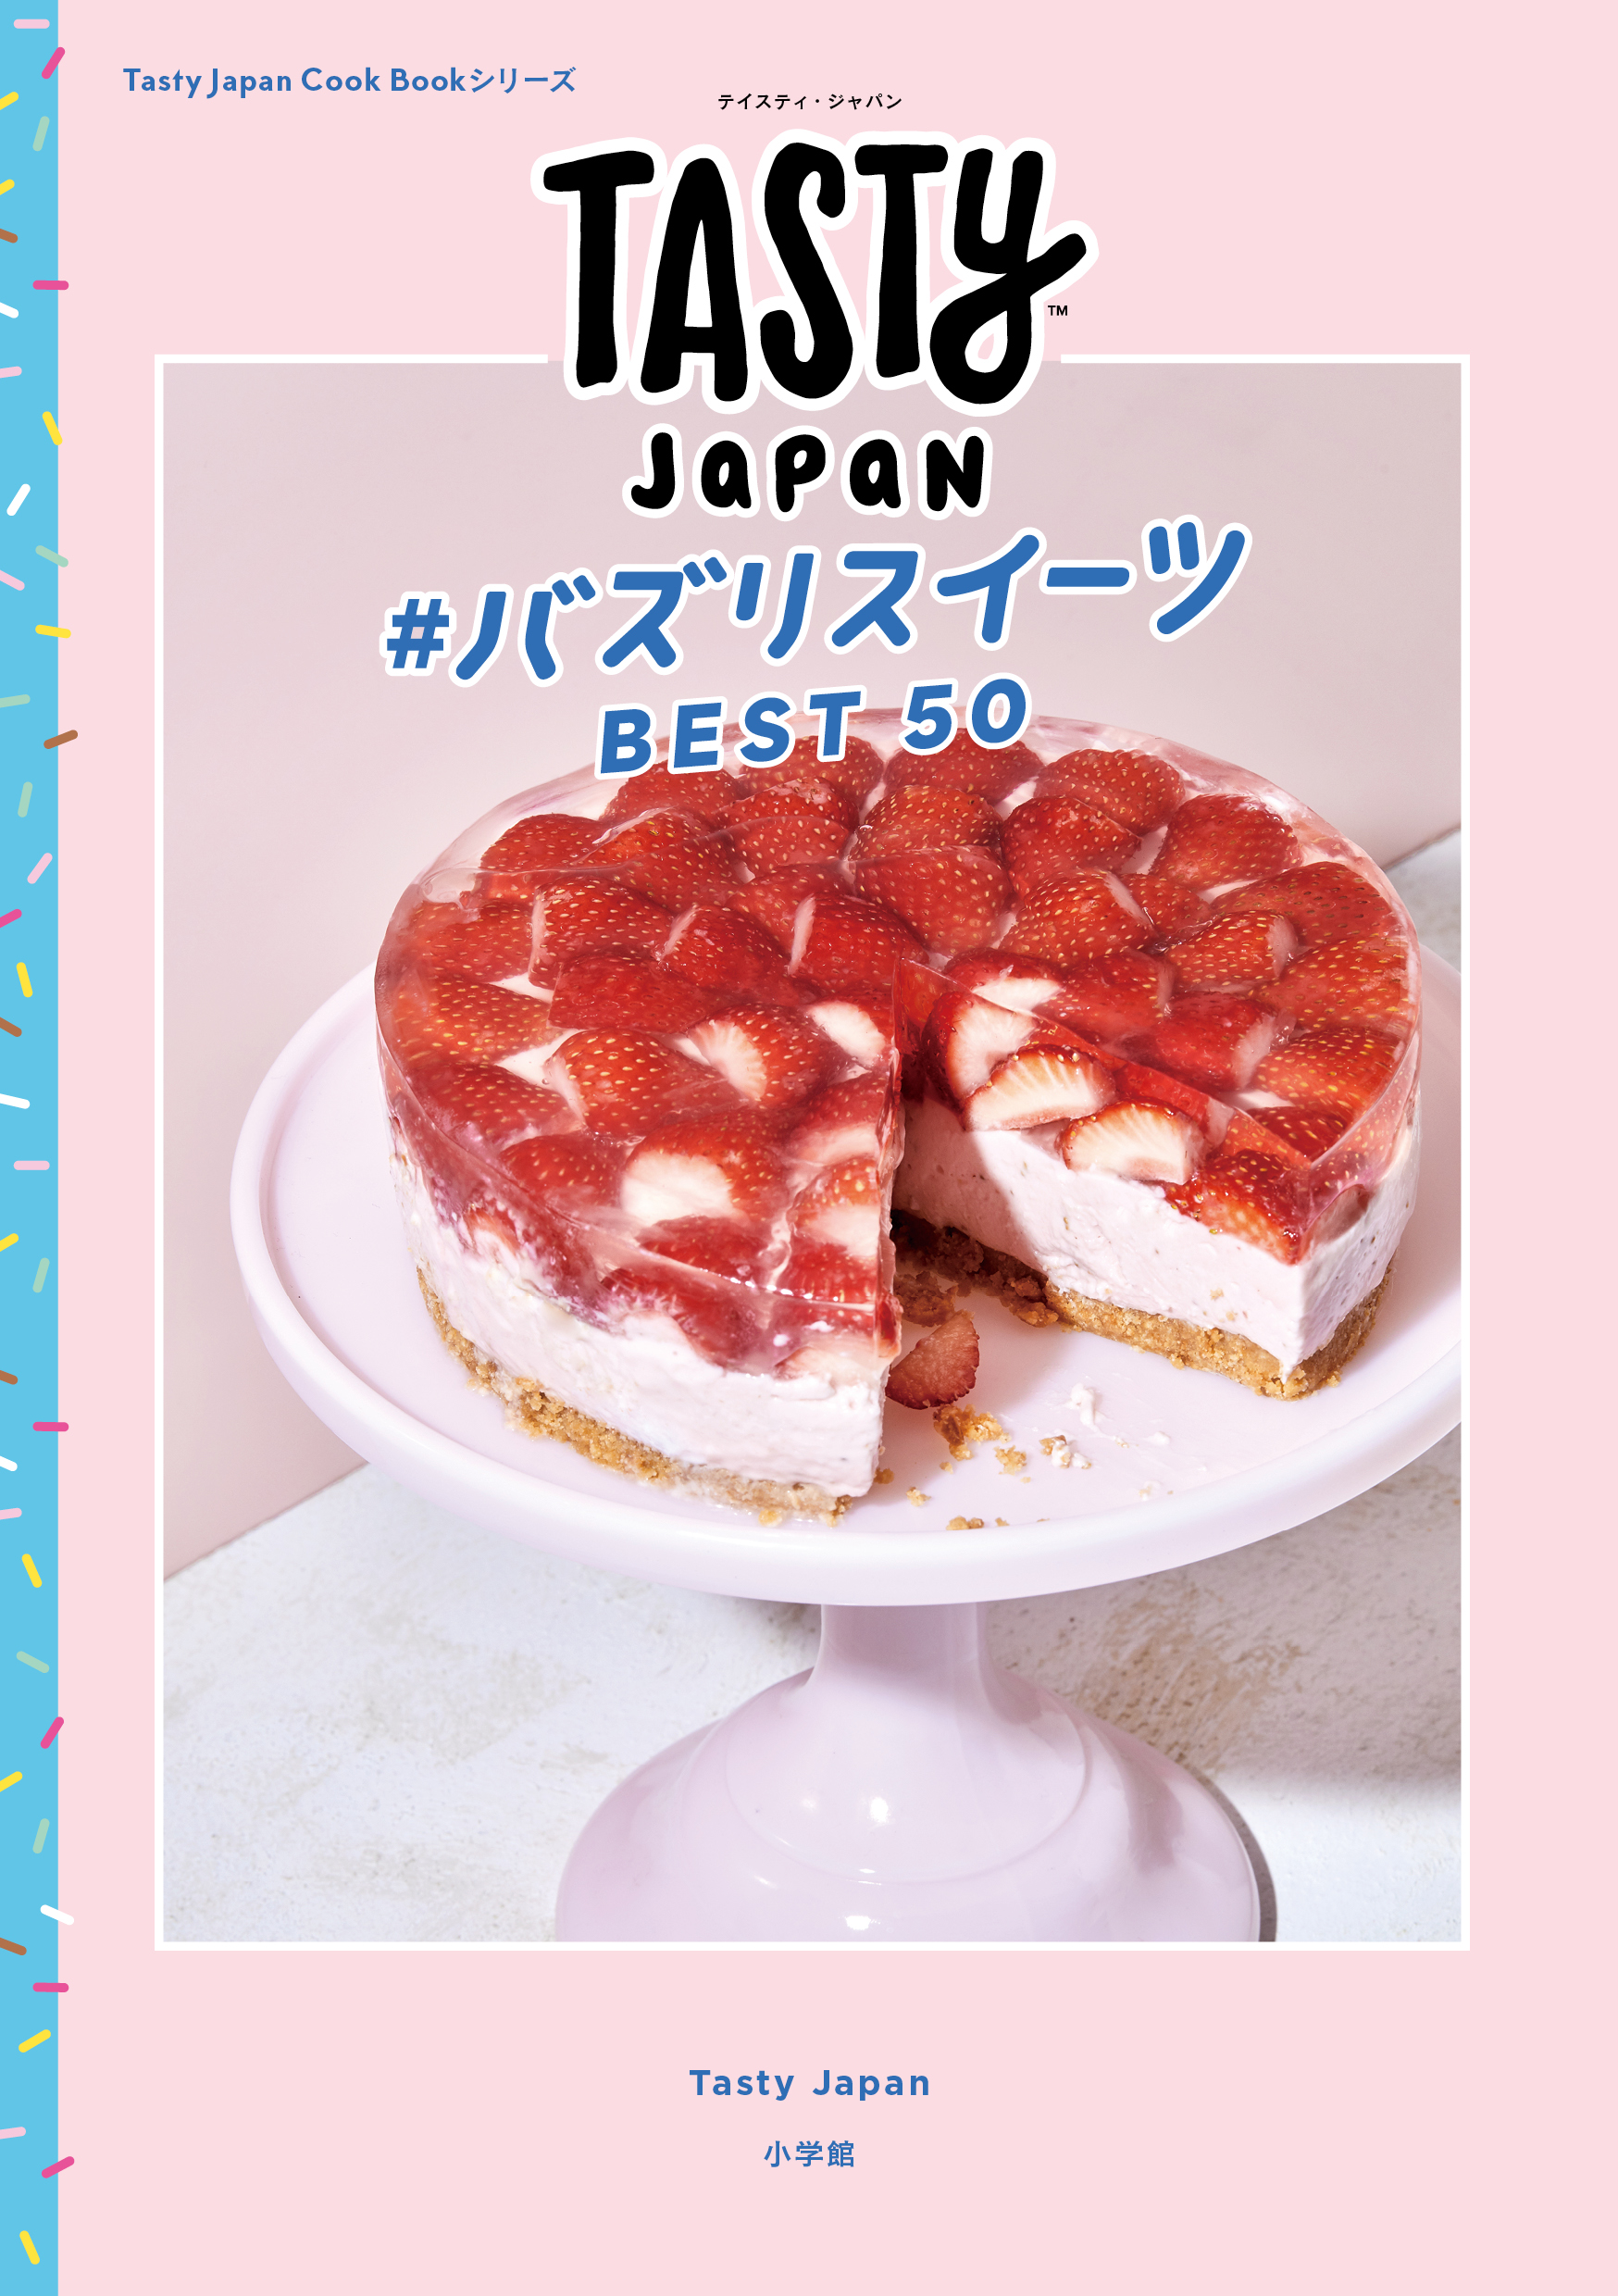 料理動画メディア Tasty Japan のレシピ本 2冊同時発売 Buzzfeed Japanのプレスリリース